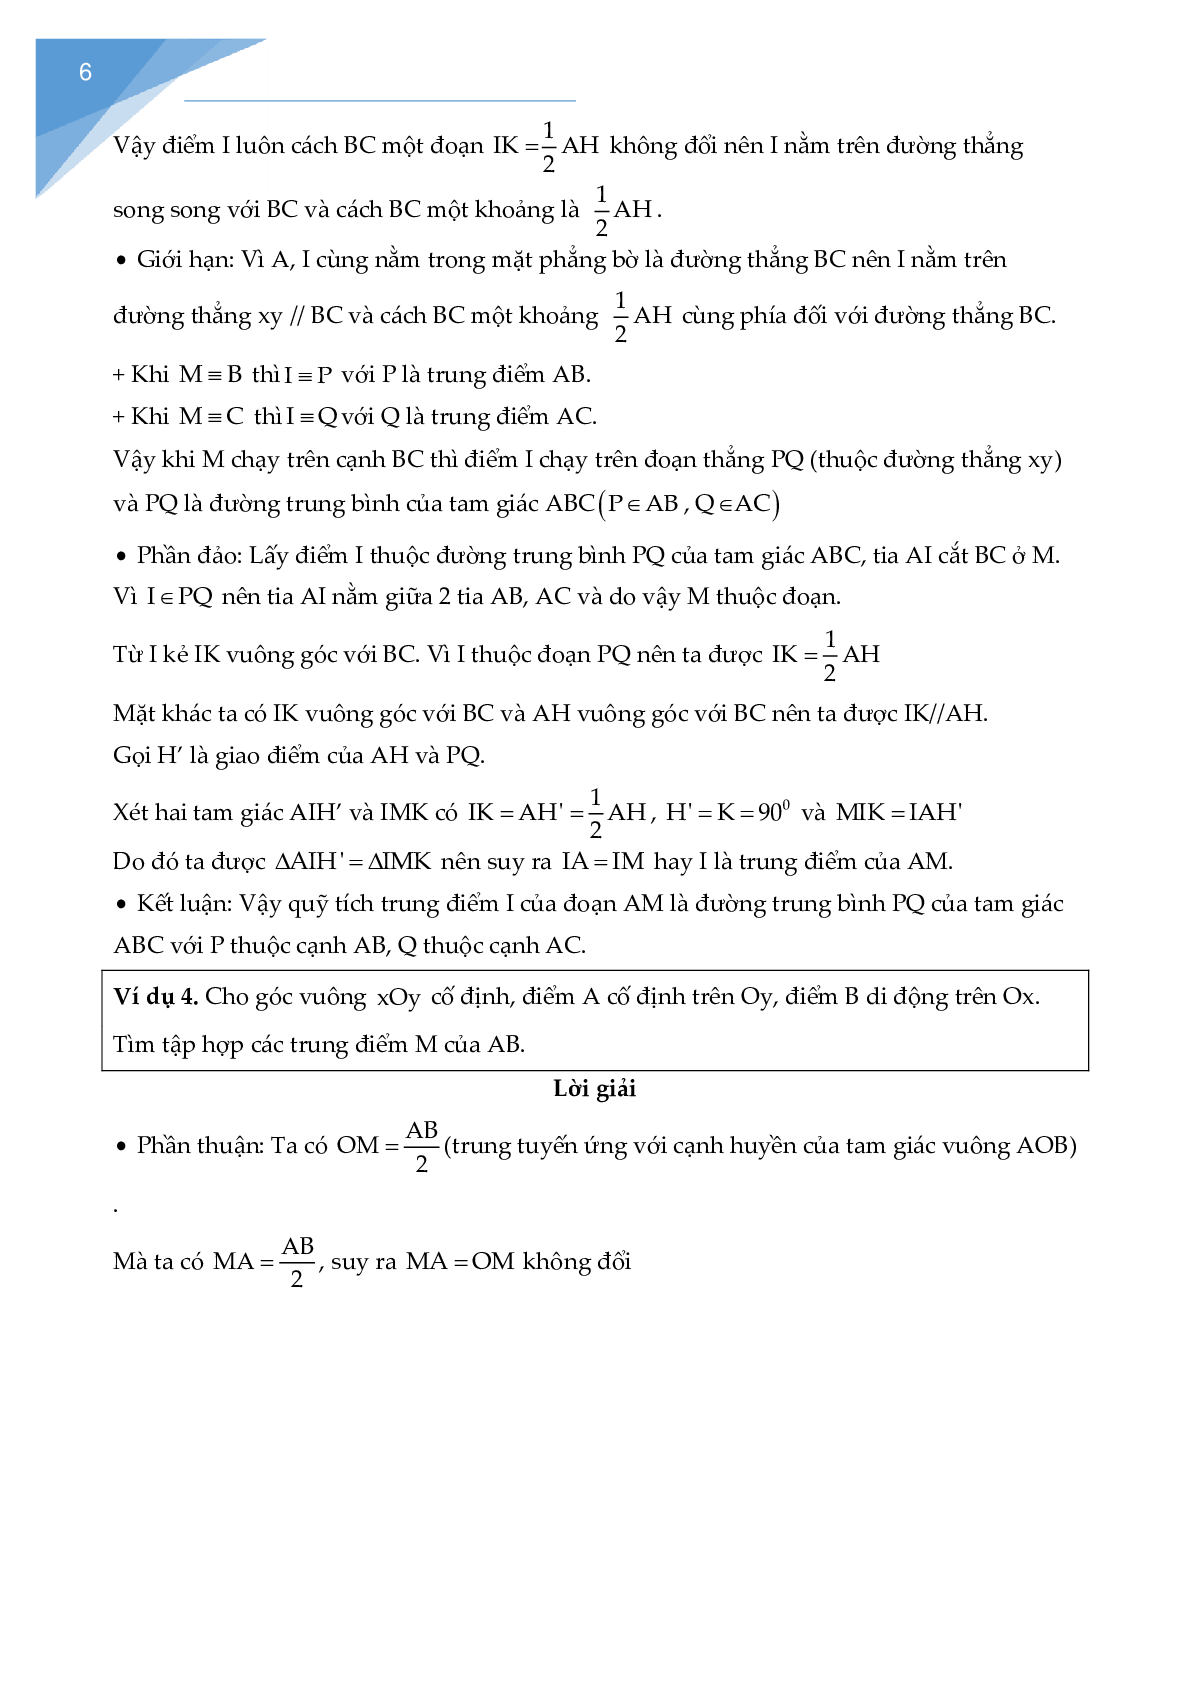 Chuyên đề các bài toán quỹ tích - tập hợp điểm (trang 7)